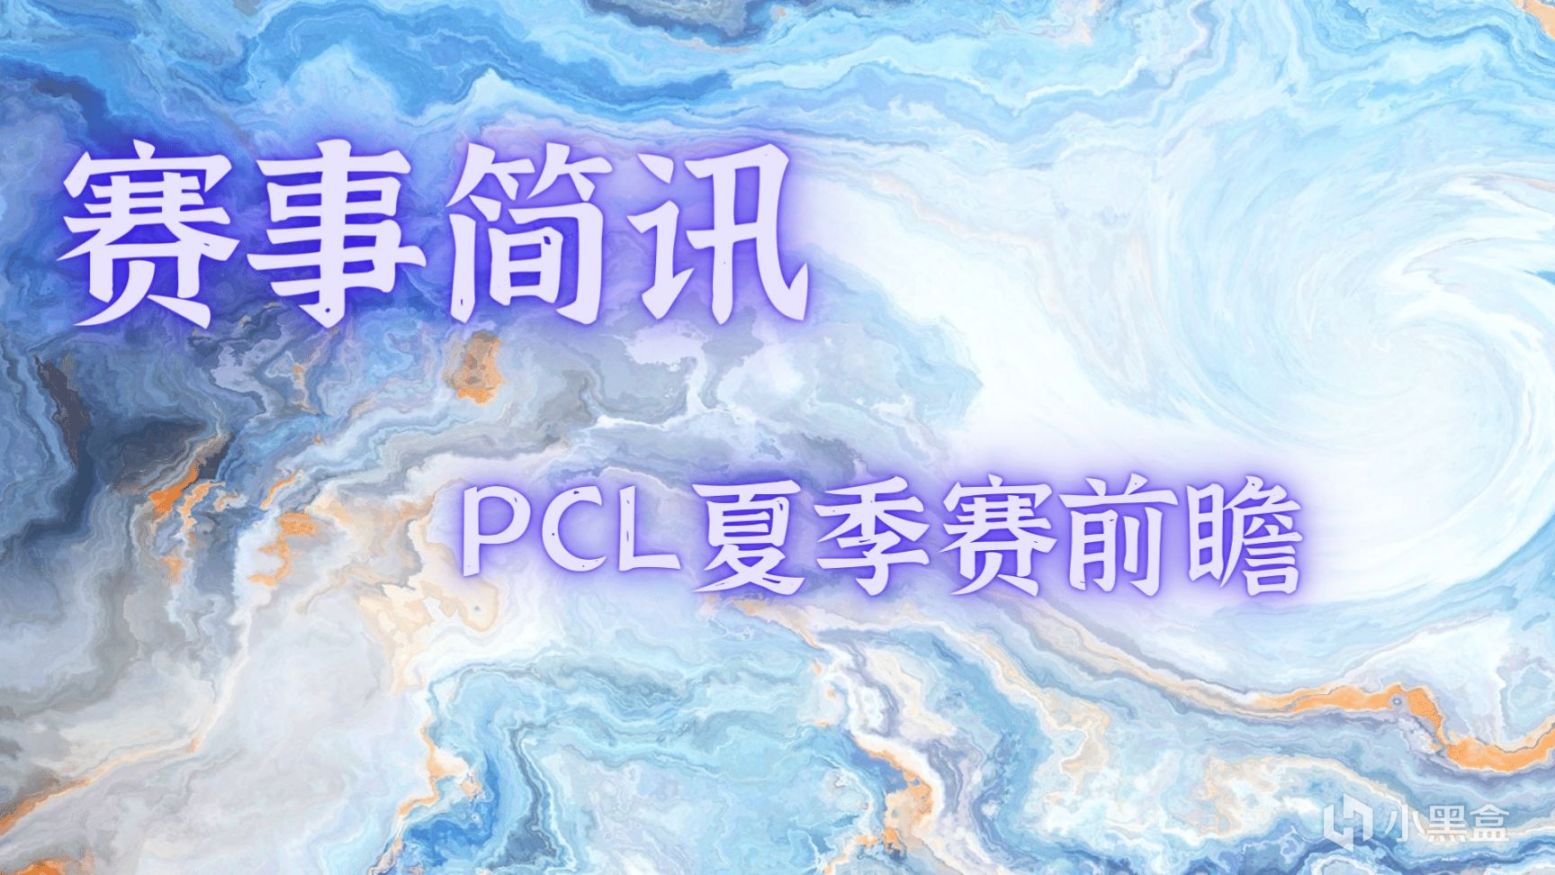 【赛事简讯】PCL夏季赛比赛时间更新，拟线下赛形式开展，PGC积分翻倍！-第0张